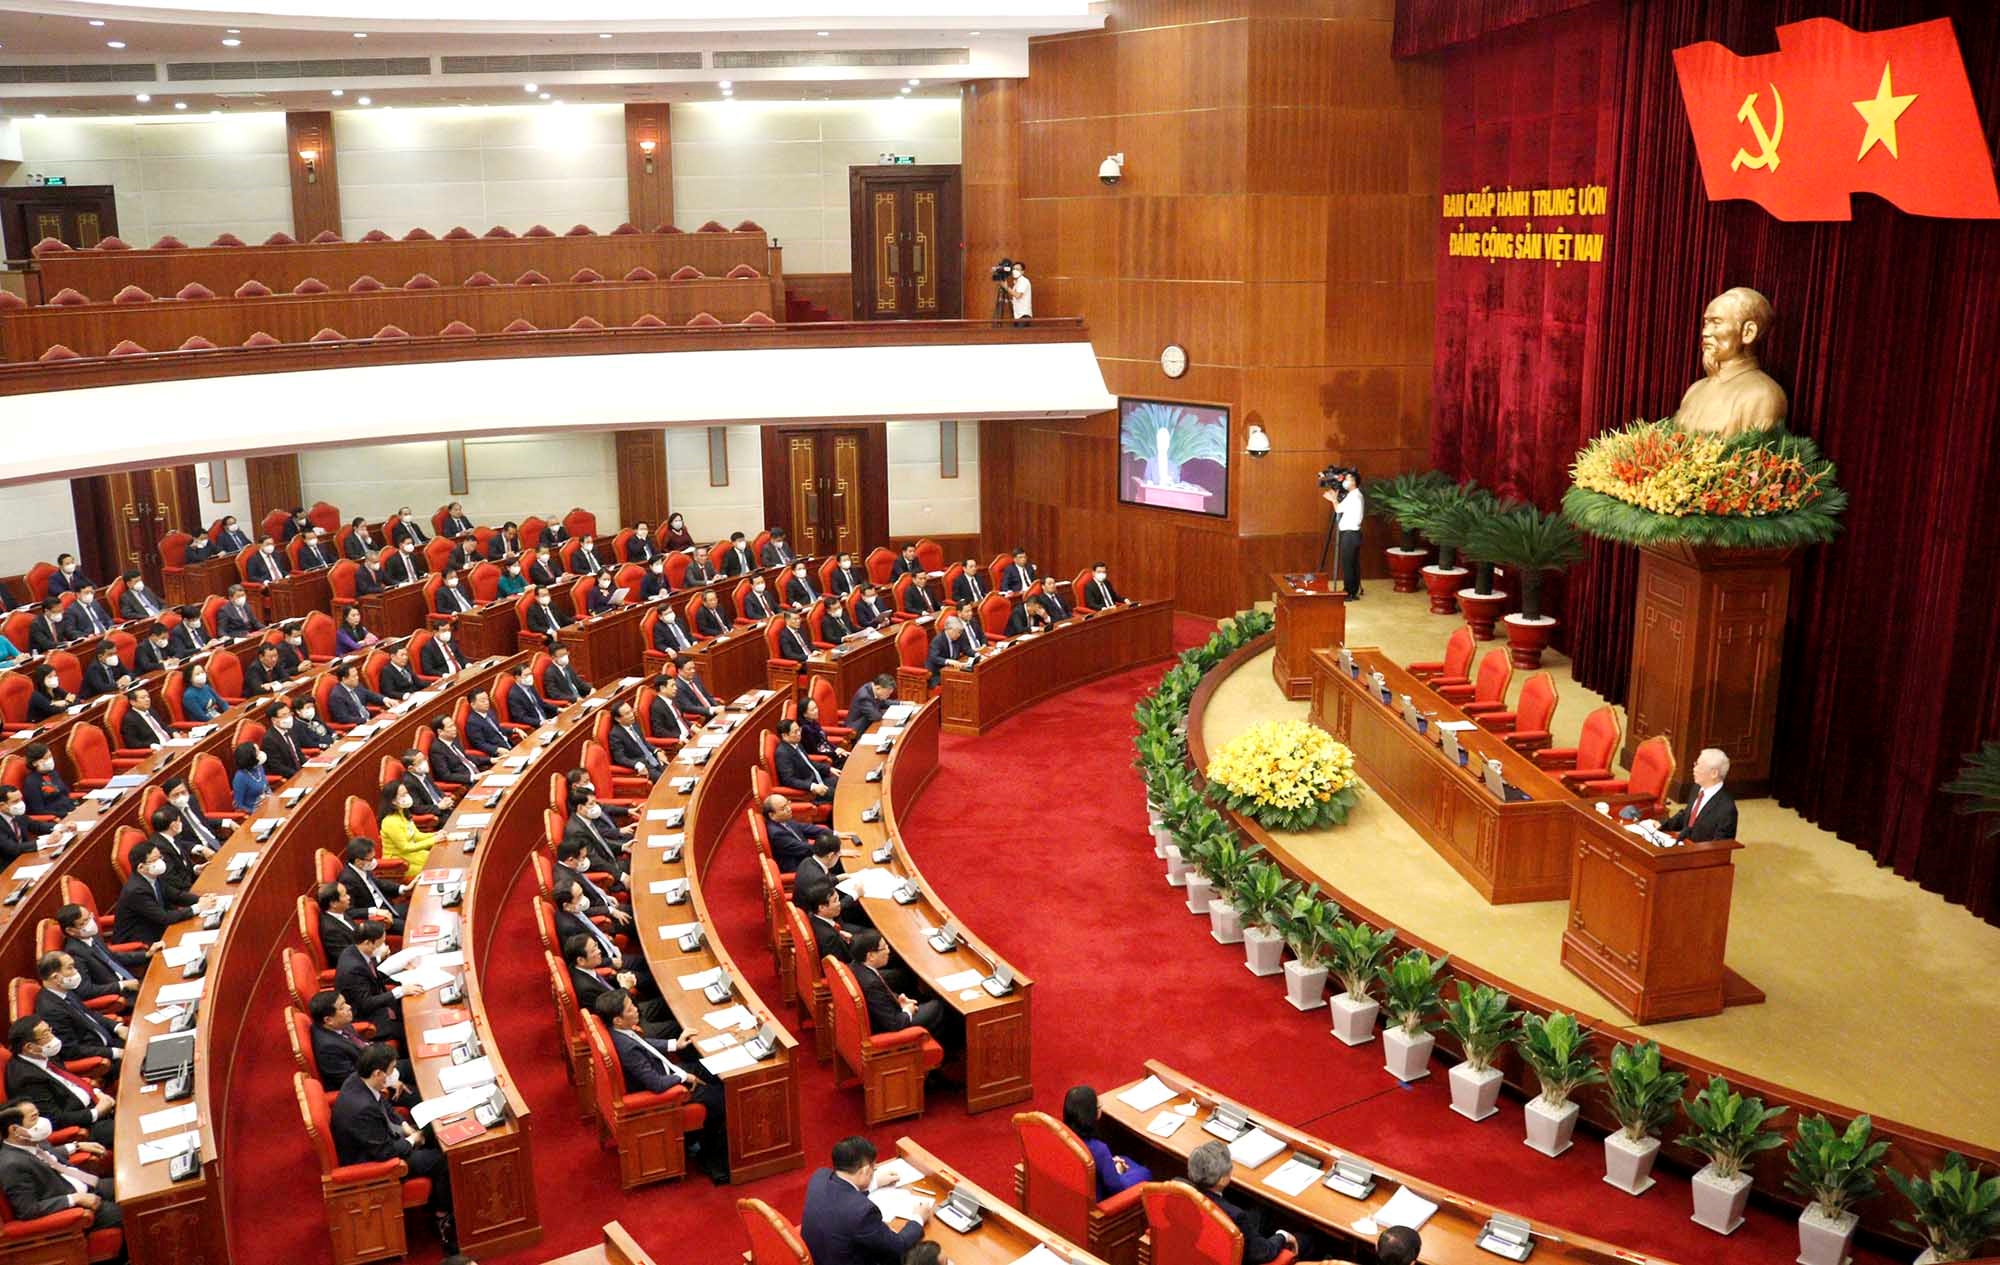 Ban Chấp hành Trung ương là cơ quan quyền lực hàng đầu của đảng Cộng sản Việt Nam, có vai trò quyết định tới chính sách của đất nước. Xem hình ảnh liên quan tới kết luận của Ban Chấp hành Trung ương để hiểu rõ hơn về quá trình hình thành và hoạt động của cơ quan này.